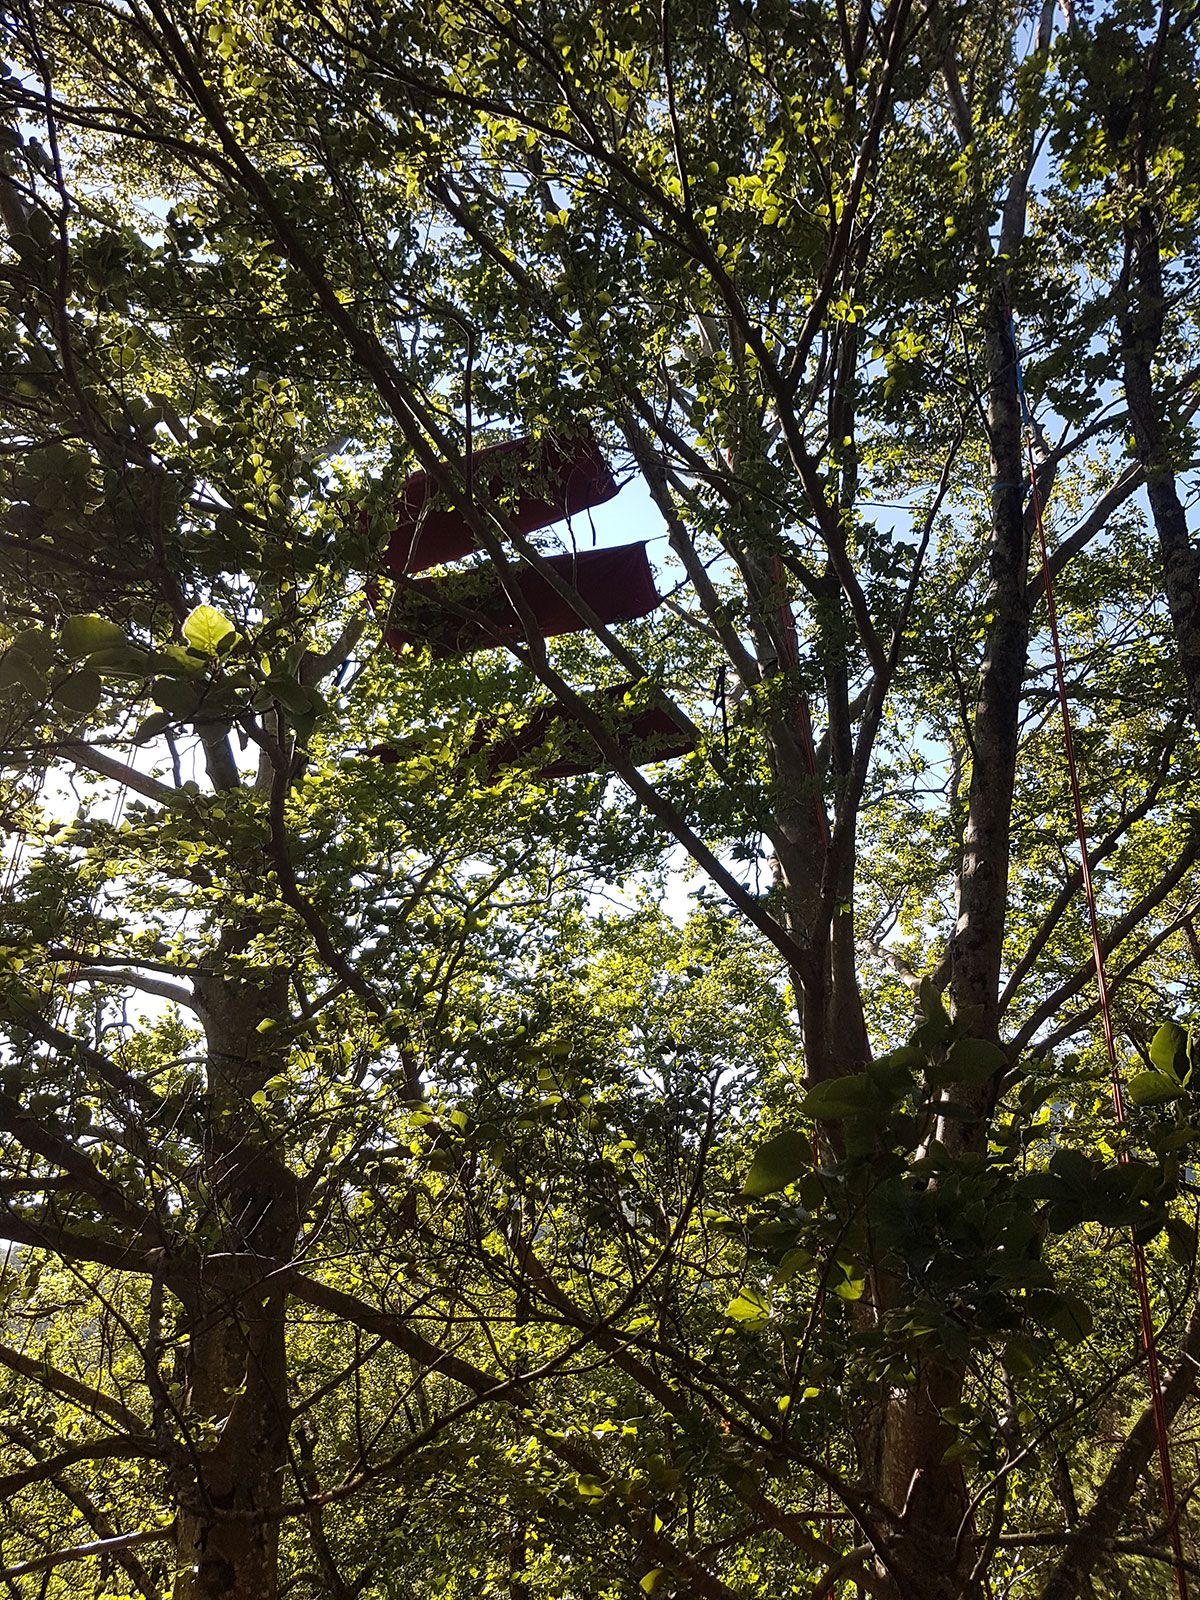  hamac bivouc sommet des arbres drome